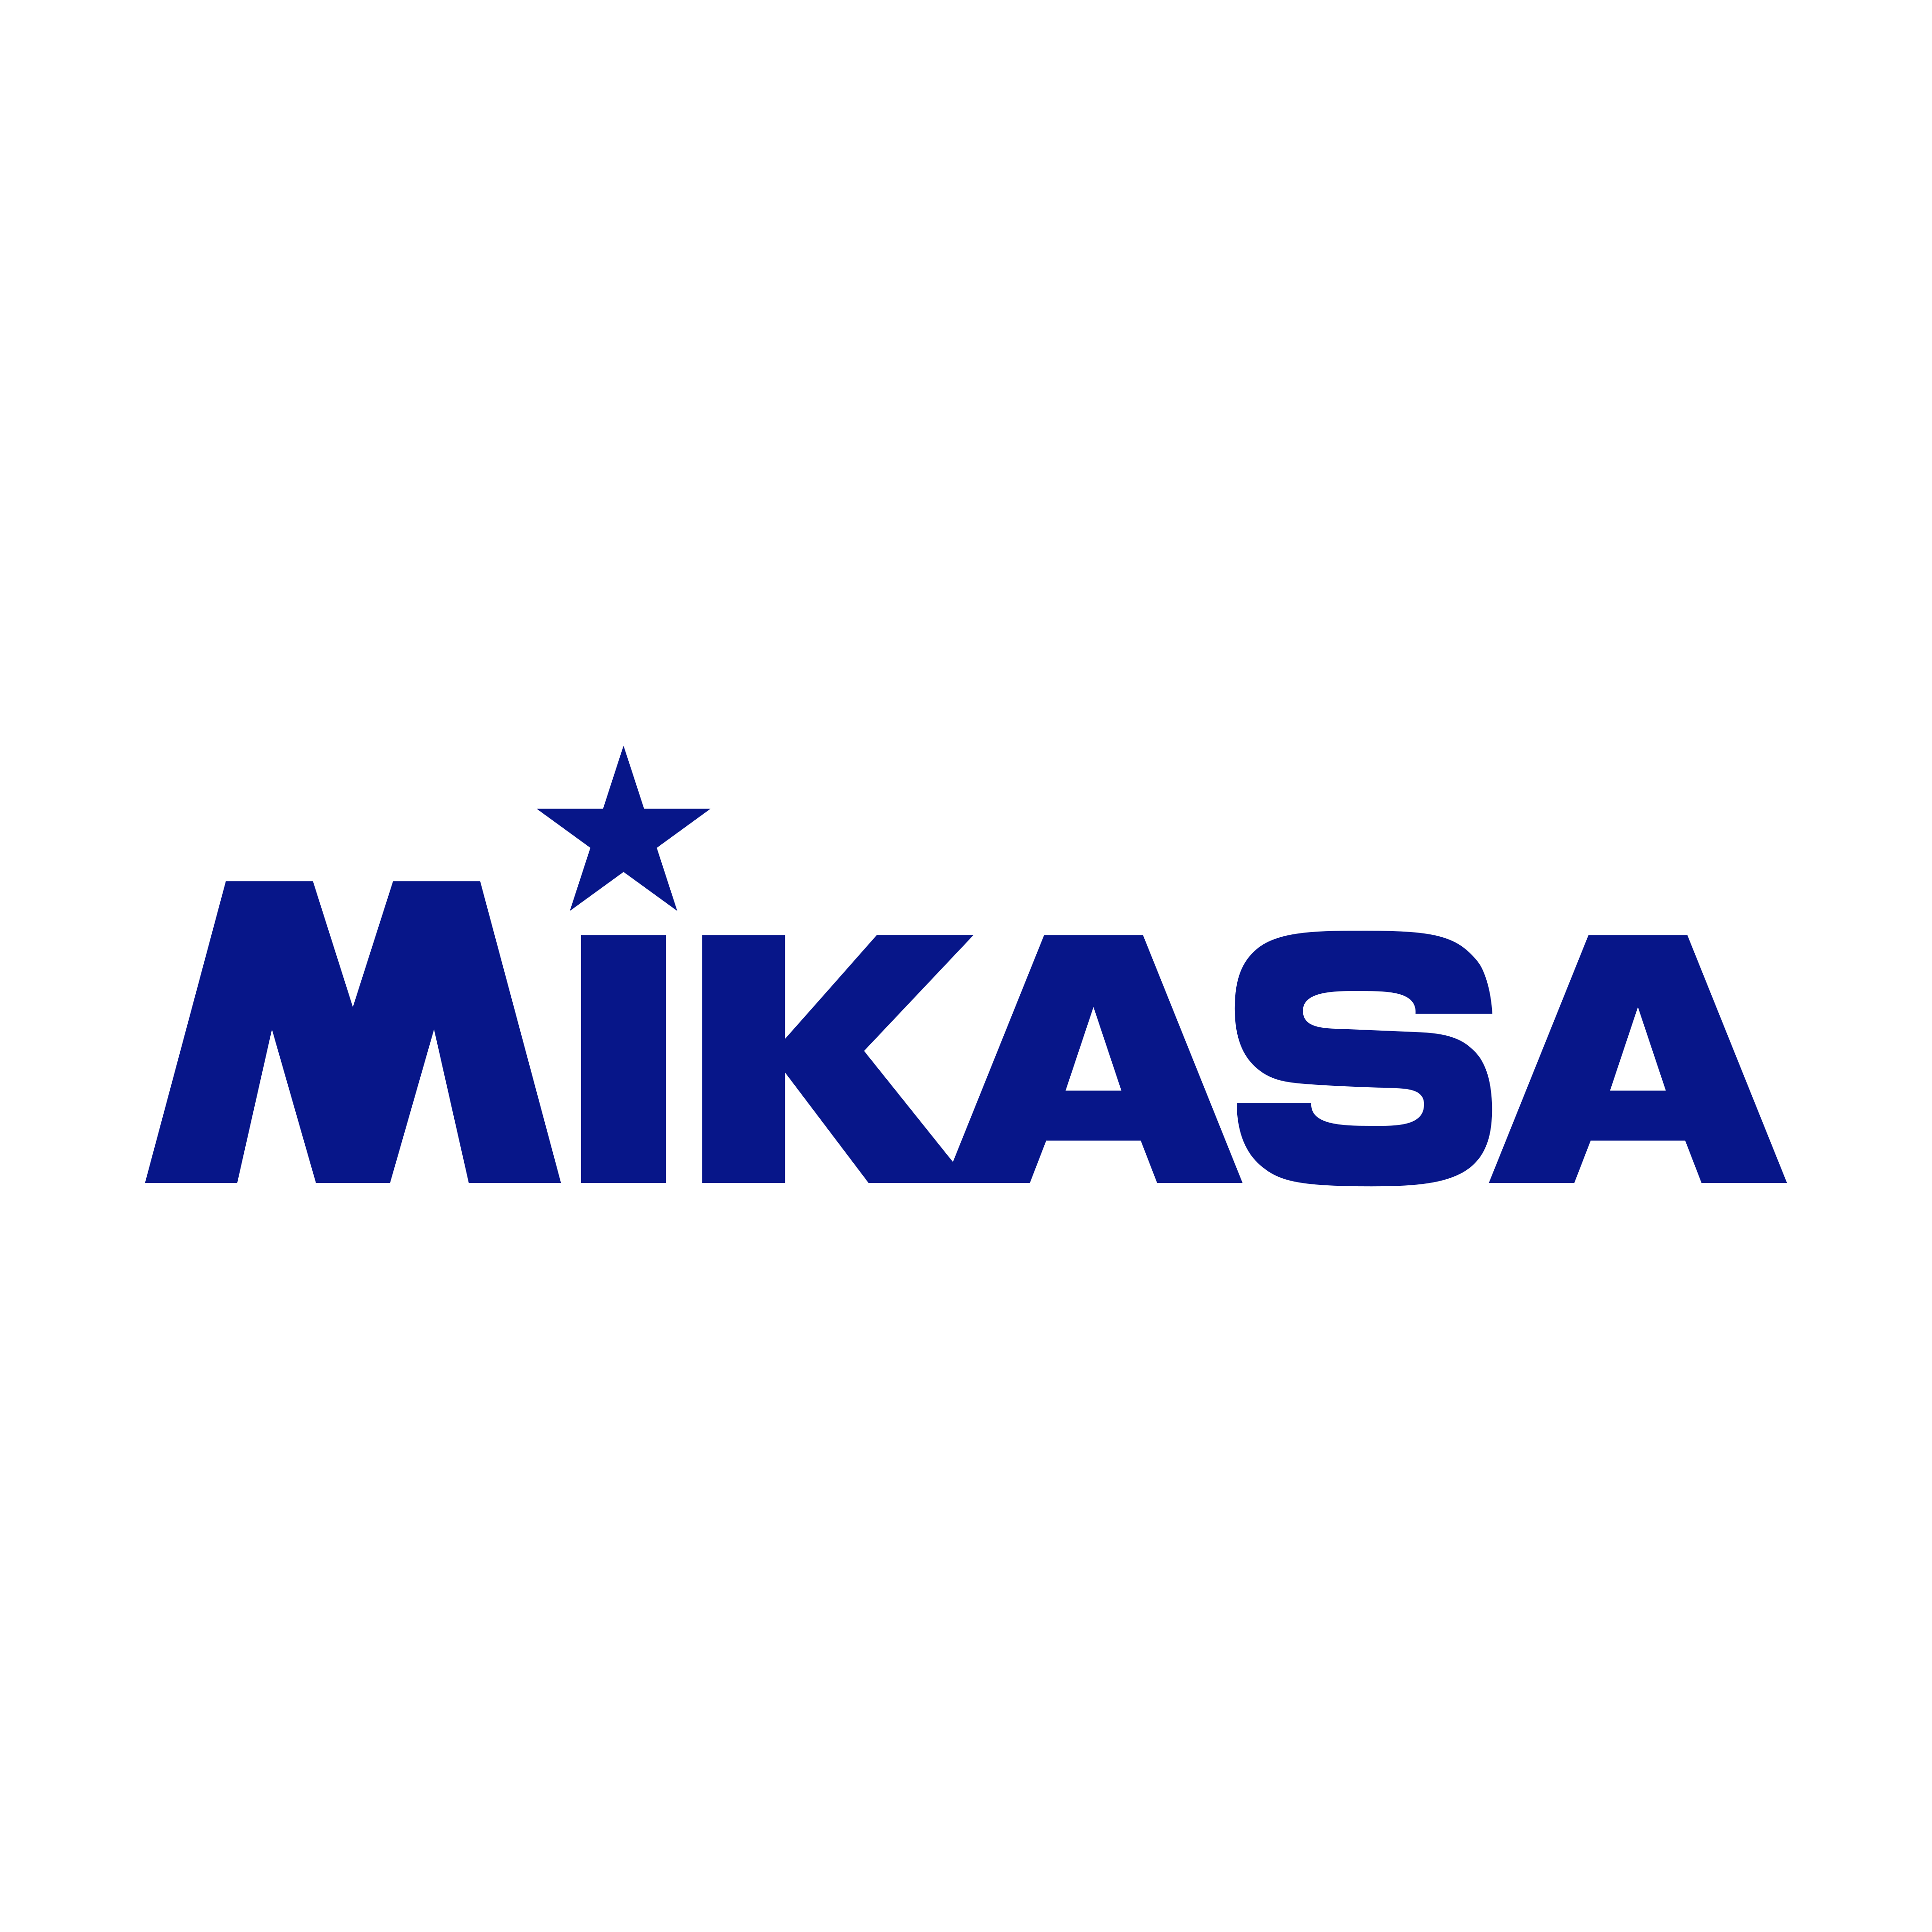 mikasa logo 0 - Mikasa Logo